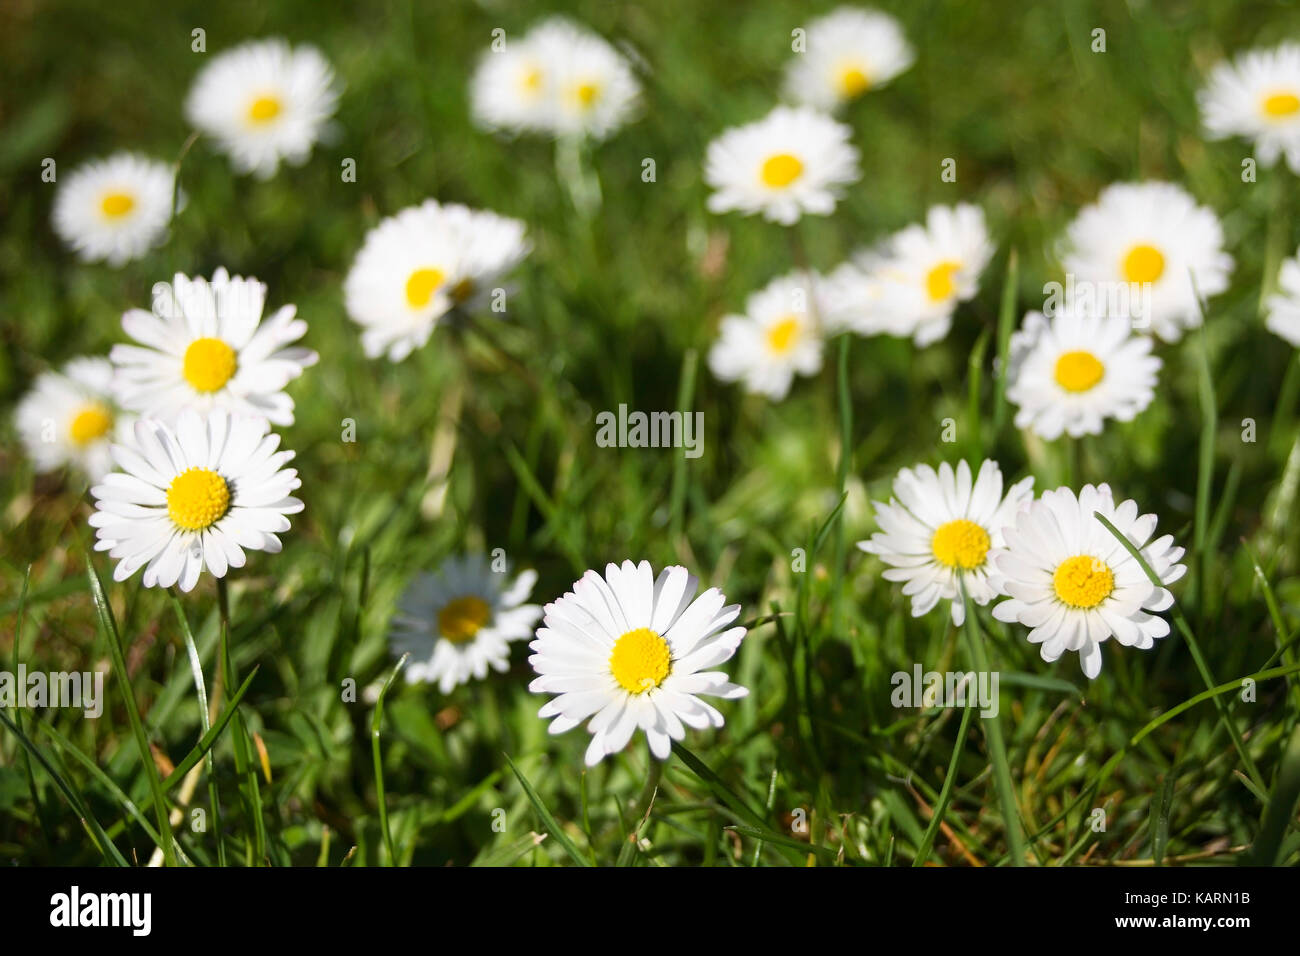 Geesthacht, daisy on a meadow, Gaensebluemchen auf einer Wiese Stock Photo